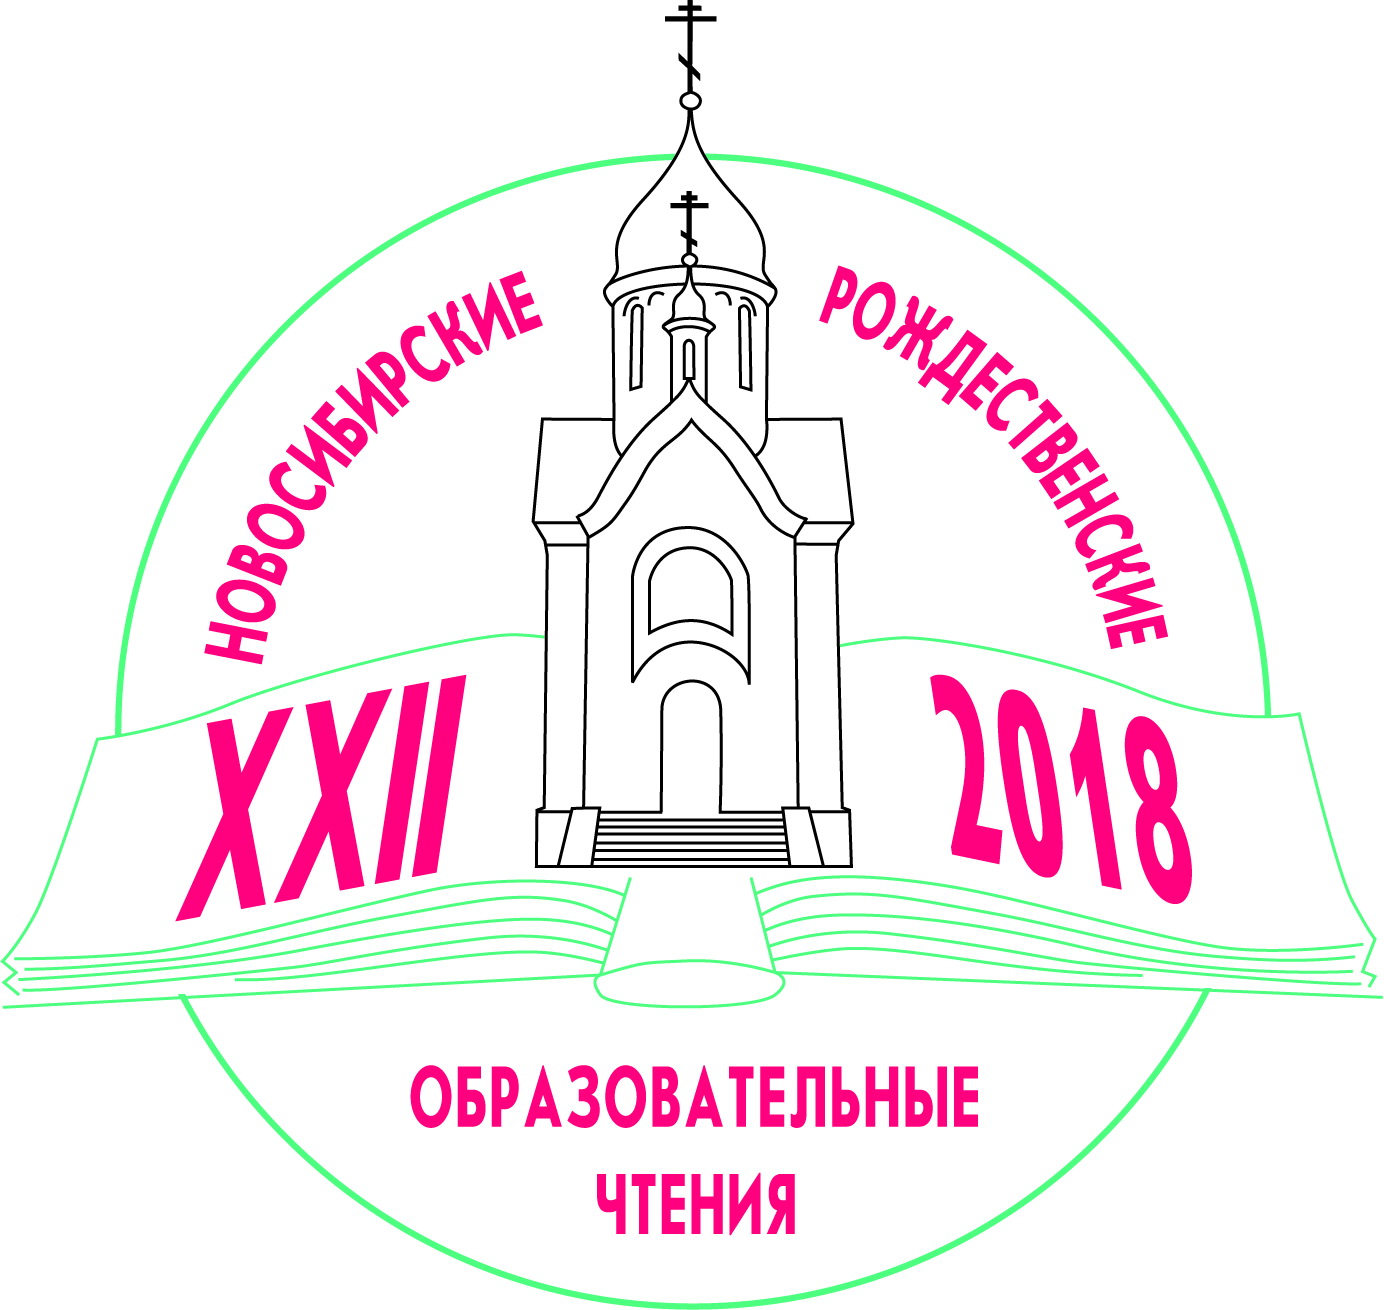 В Новосибирске проходят XXII Рождественские образовательные чтения